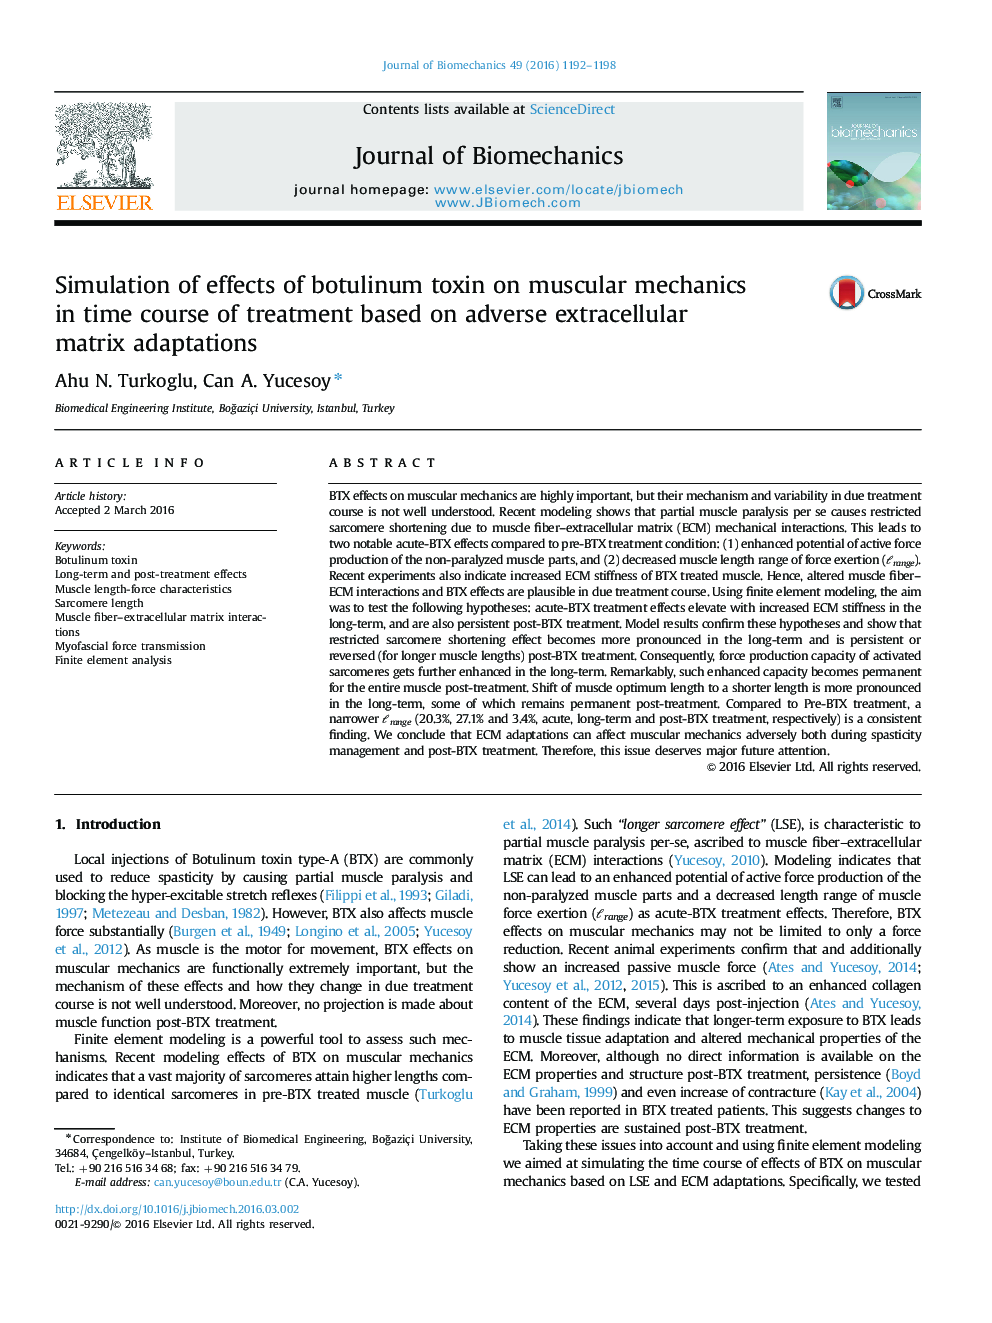 شبیه سازی اثرات سم بوتولینوم بر مکانیک عضلانی در دوره درمان مبتنی بر سازگاری ماتریکس های غیر سلولی 